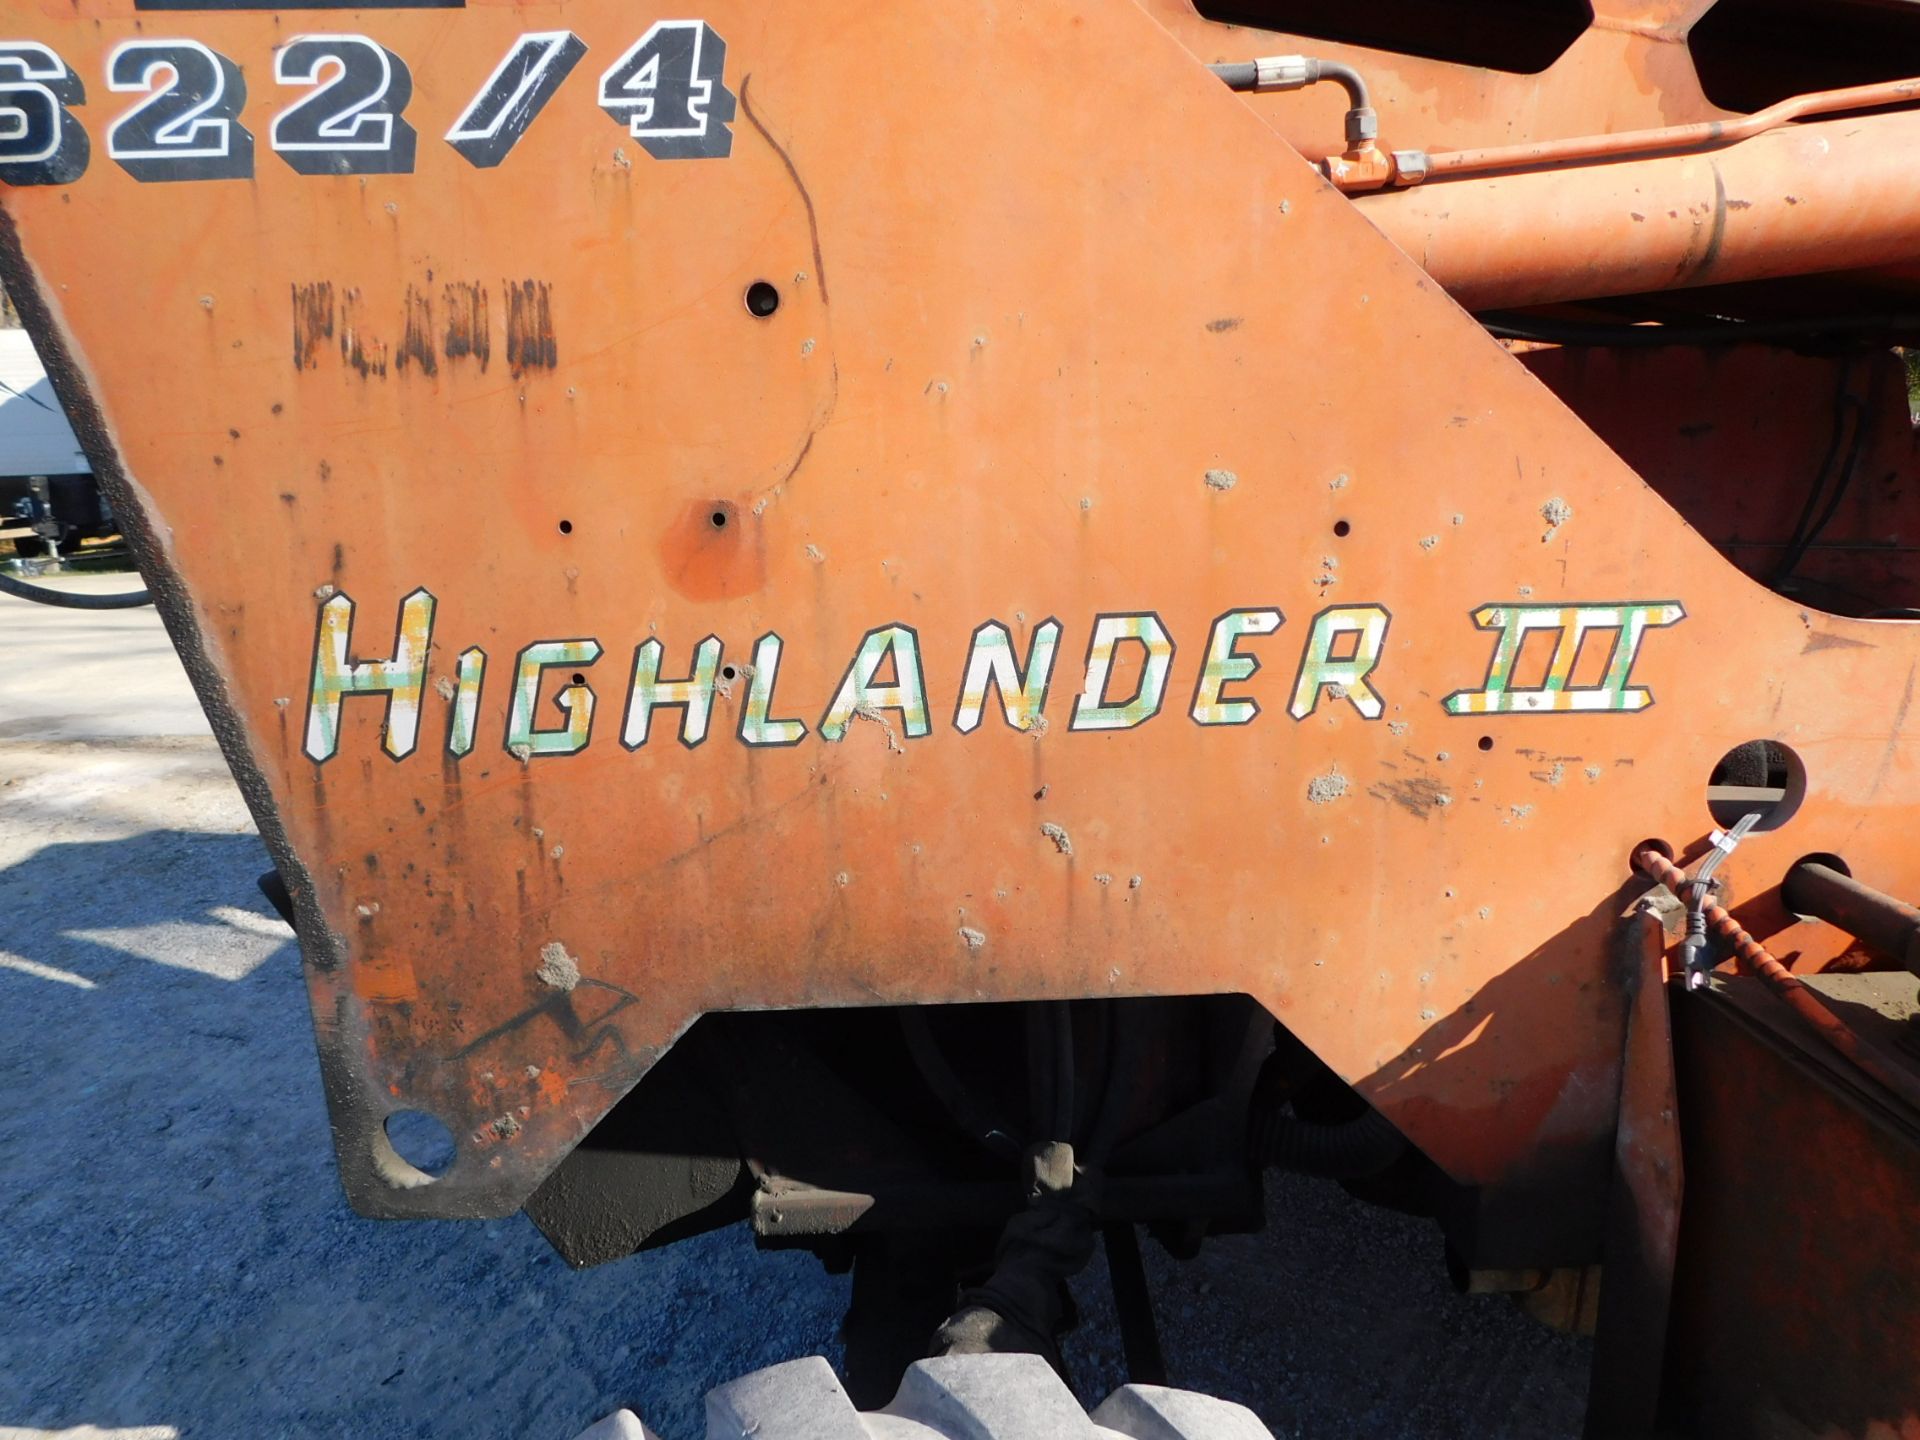 Lull Highlander III Model 622/4 Telehandler, s/n B7C4C3-583, 6,000 Lb. Capacity, 25' Reach, John - Image 22 of 24